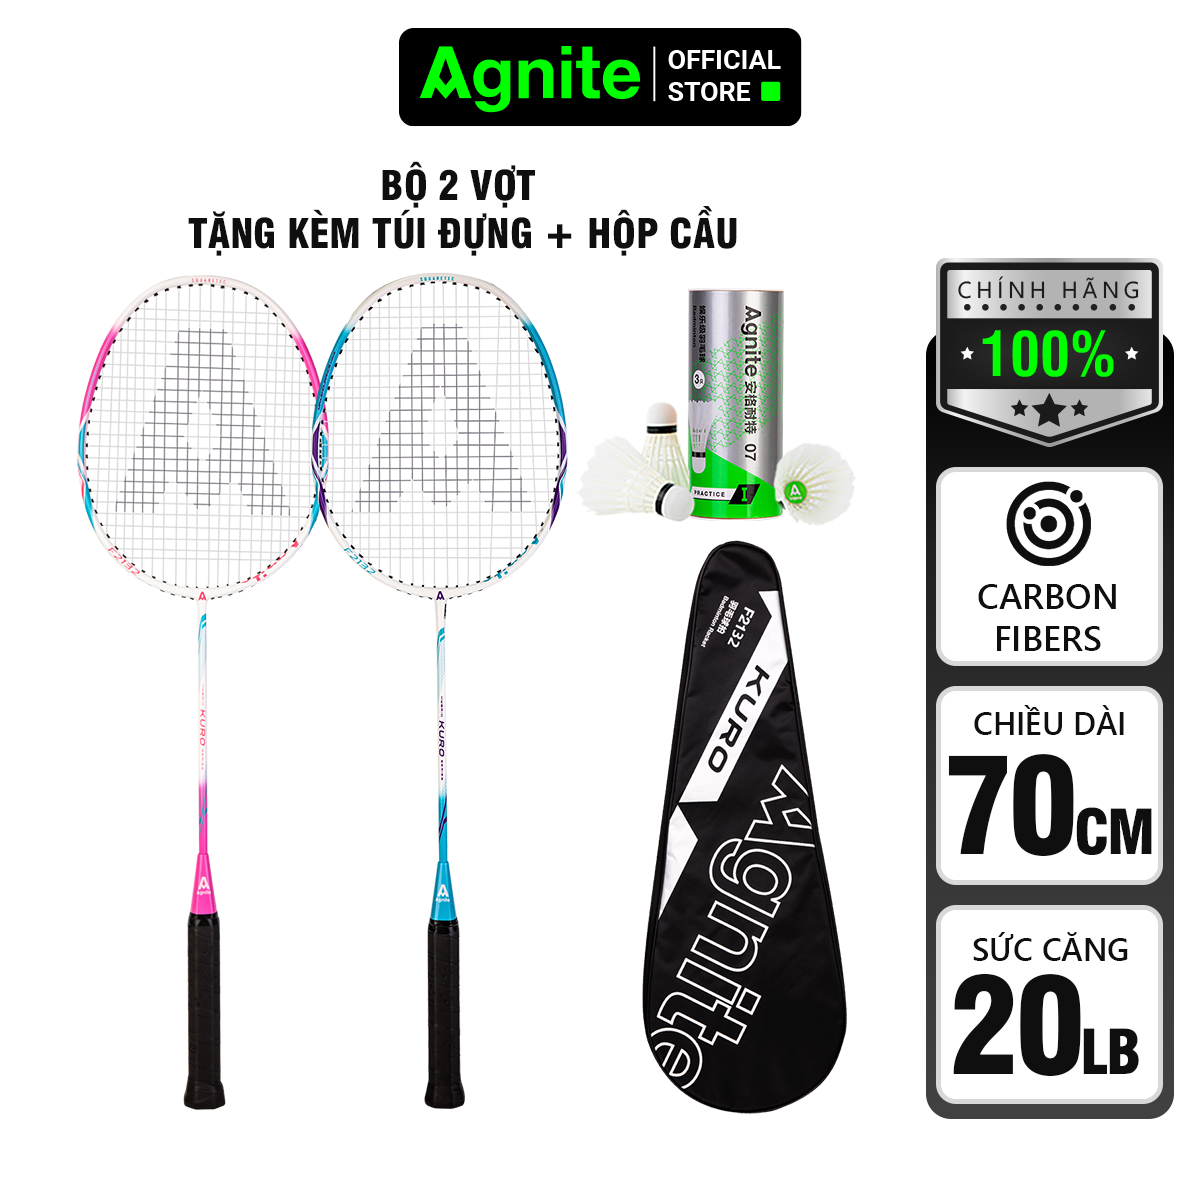 Bộ 2 chiếc vợt cầu lông Agnite chính hãng tặng kèm 3 quả cầu và bao đựng